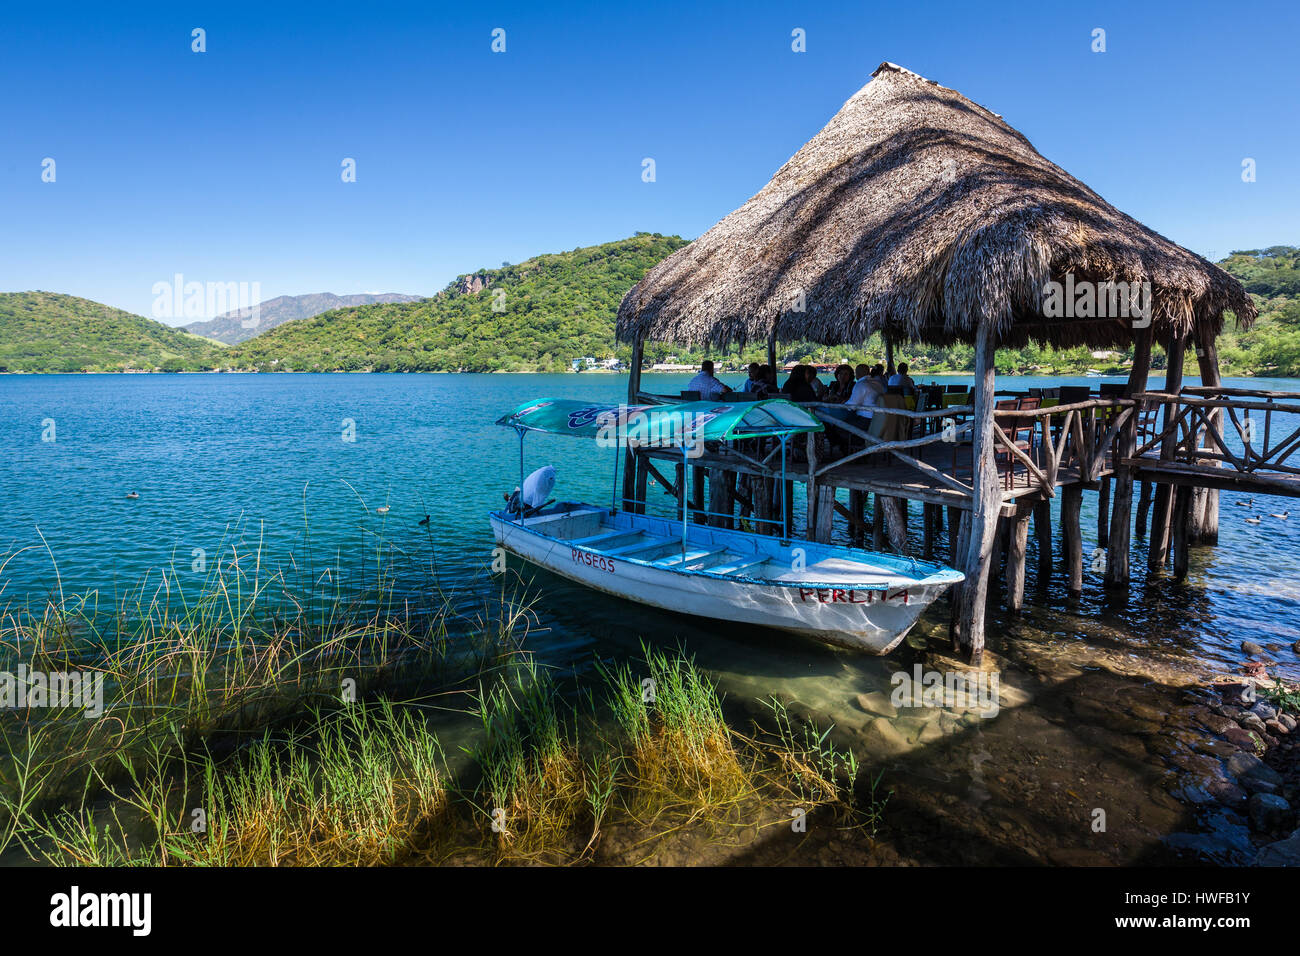 Palapa seafood restaurant on the lake at Santa Maria del Oro in Nayarit, Mexico. Stock Photo